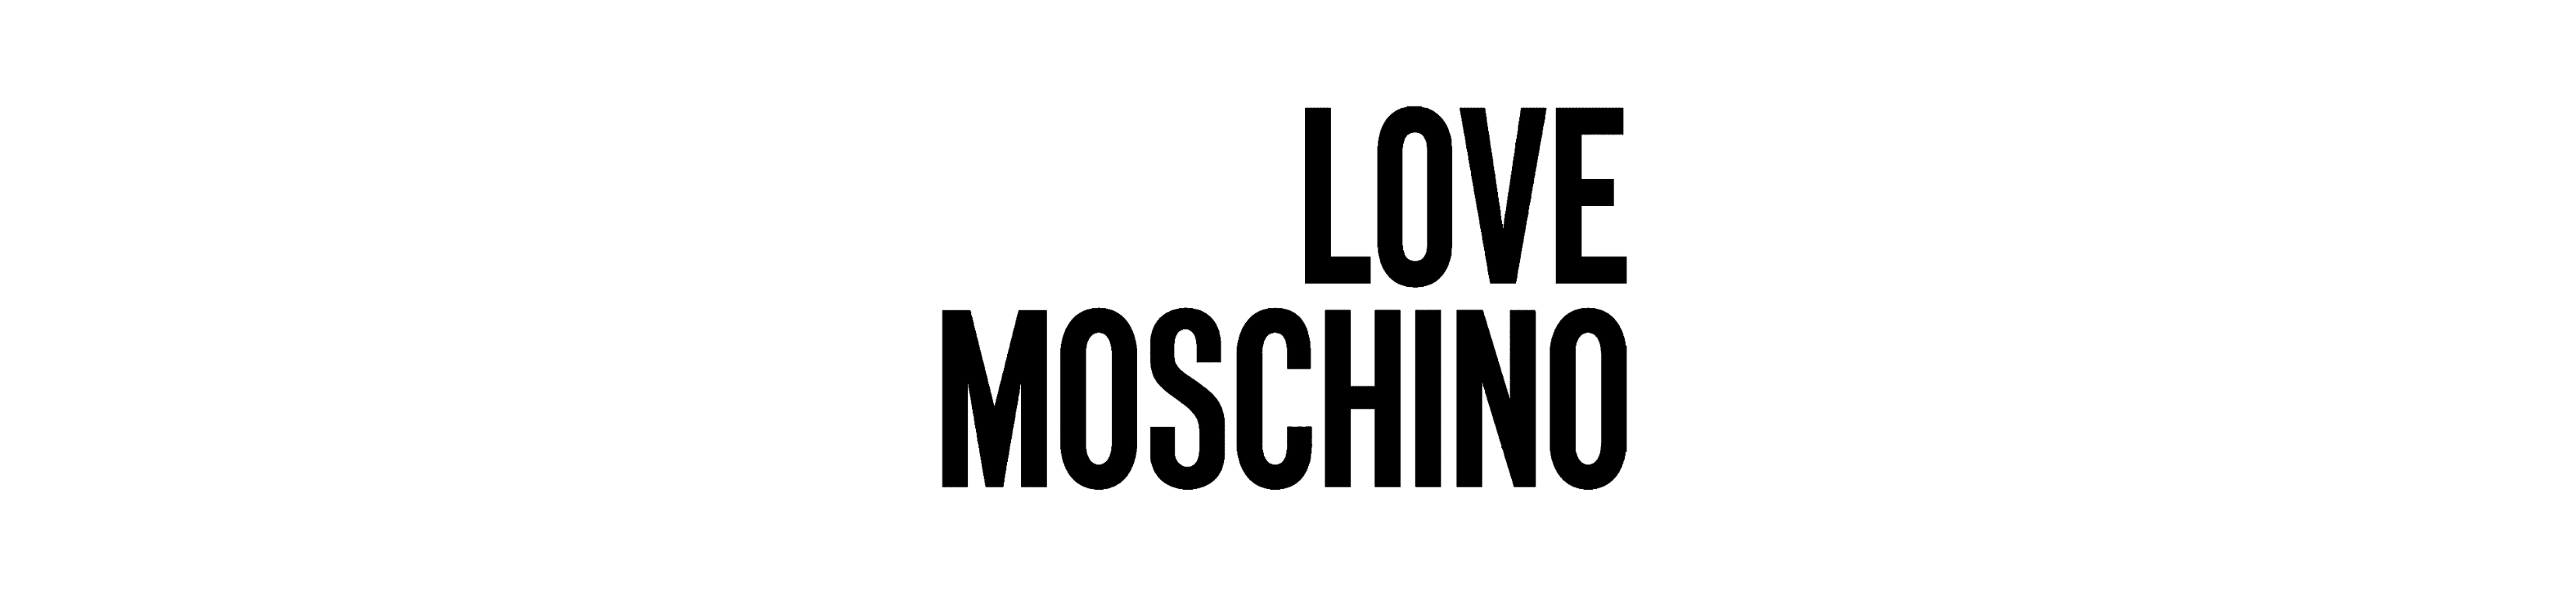 LOVE Moschino